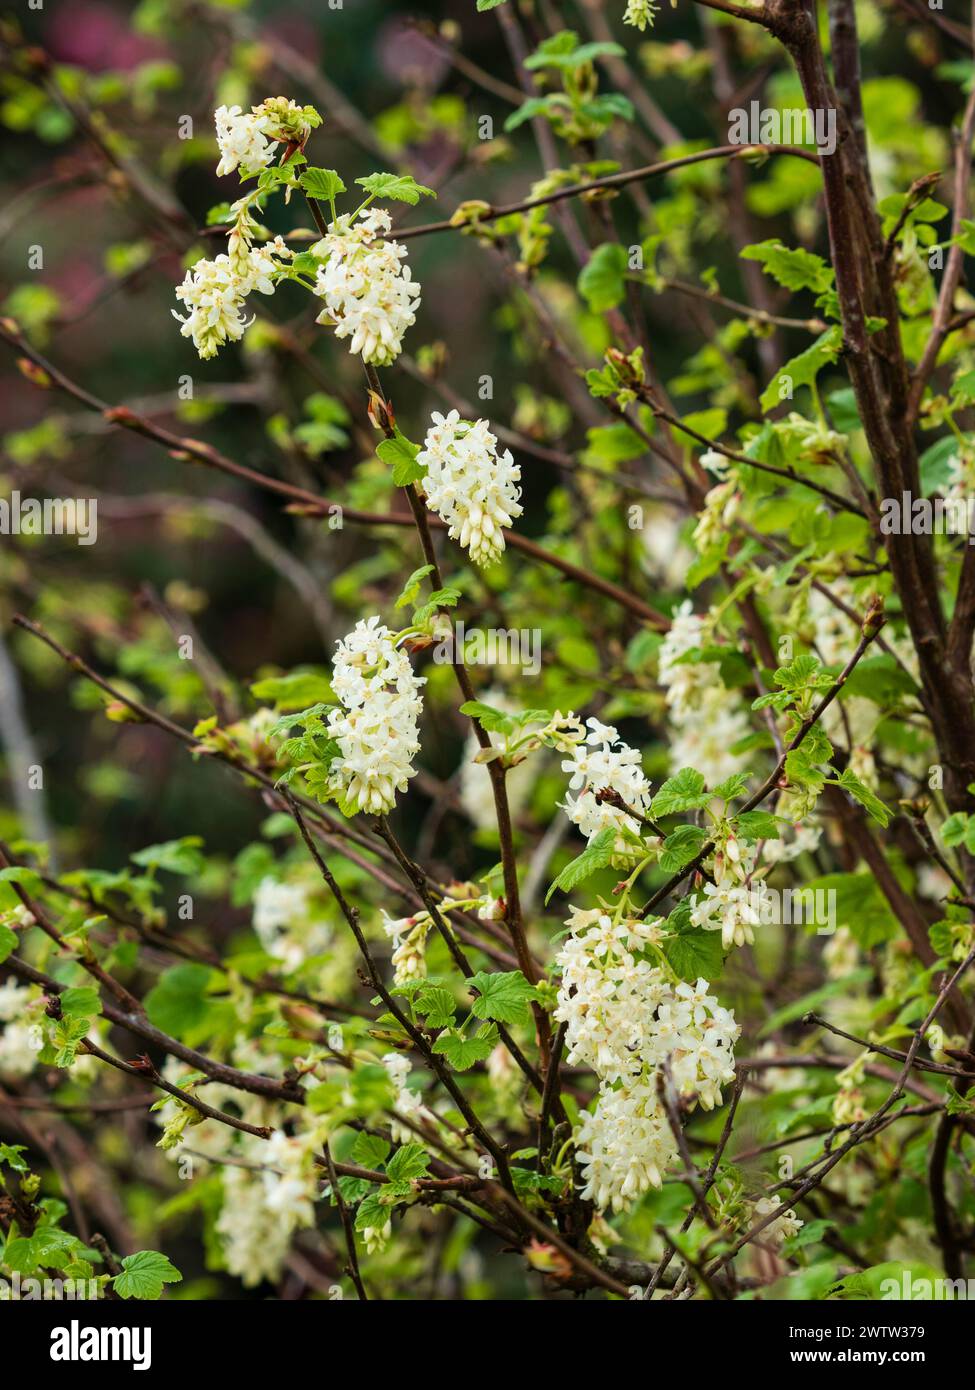 Corse primaverili piene di fiori bianchi dell'arduo ribes in fiore deciduo, Ribes sanguineum "White Icicle" Foto Stock